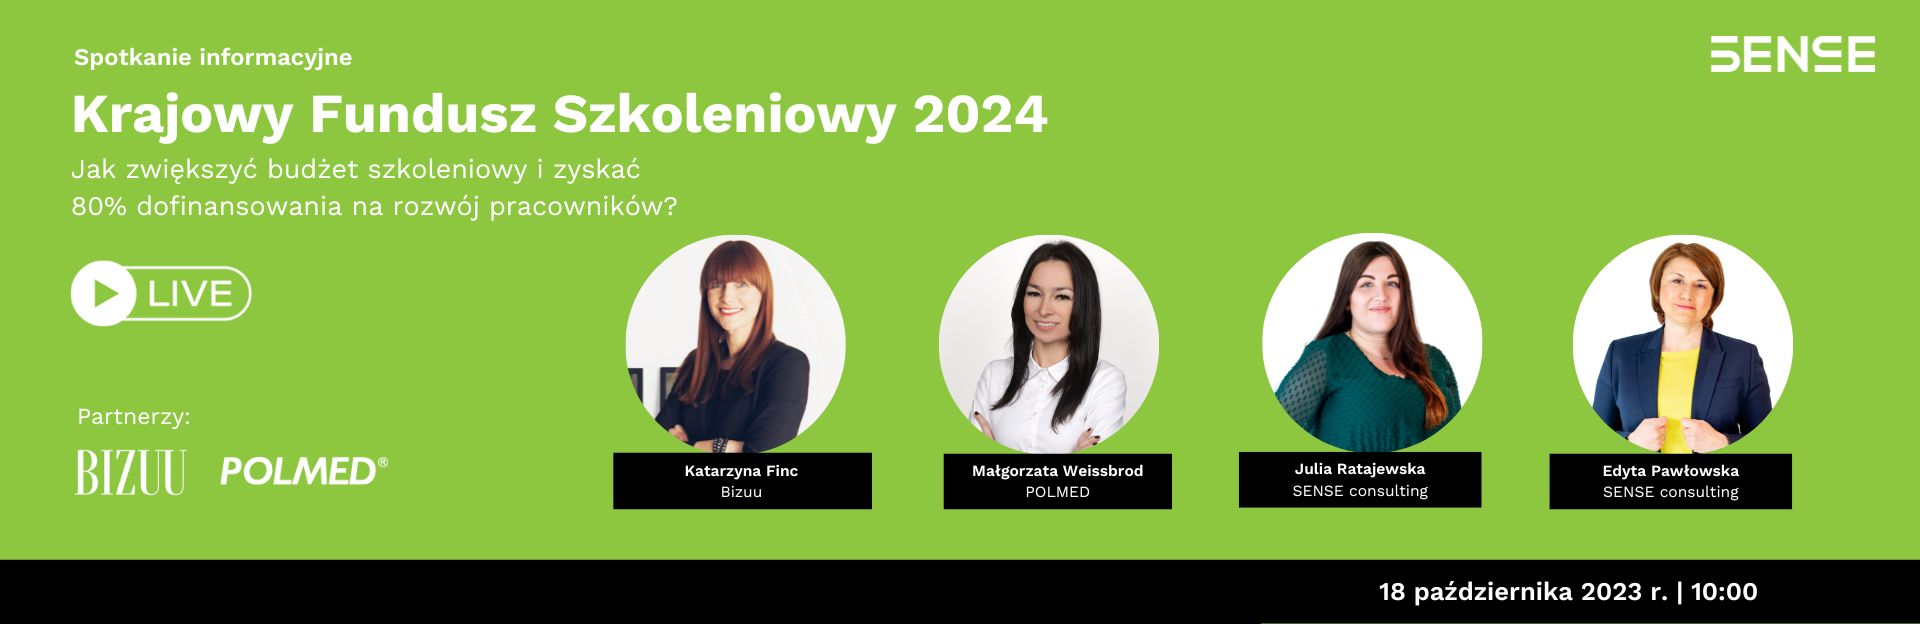 zielone tło, zdjęcia portretowe czterech kobiet, Natalia Marciniak-Madejska, Katarzyna Prętnicka, Darmowy webinar, Krajowy Fundusz Szkoleniowy 2024 18 października godz. 10